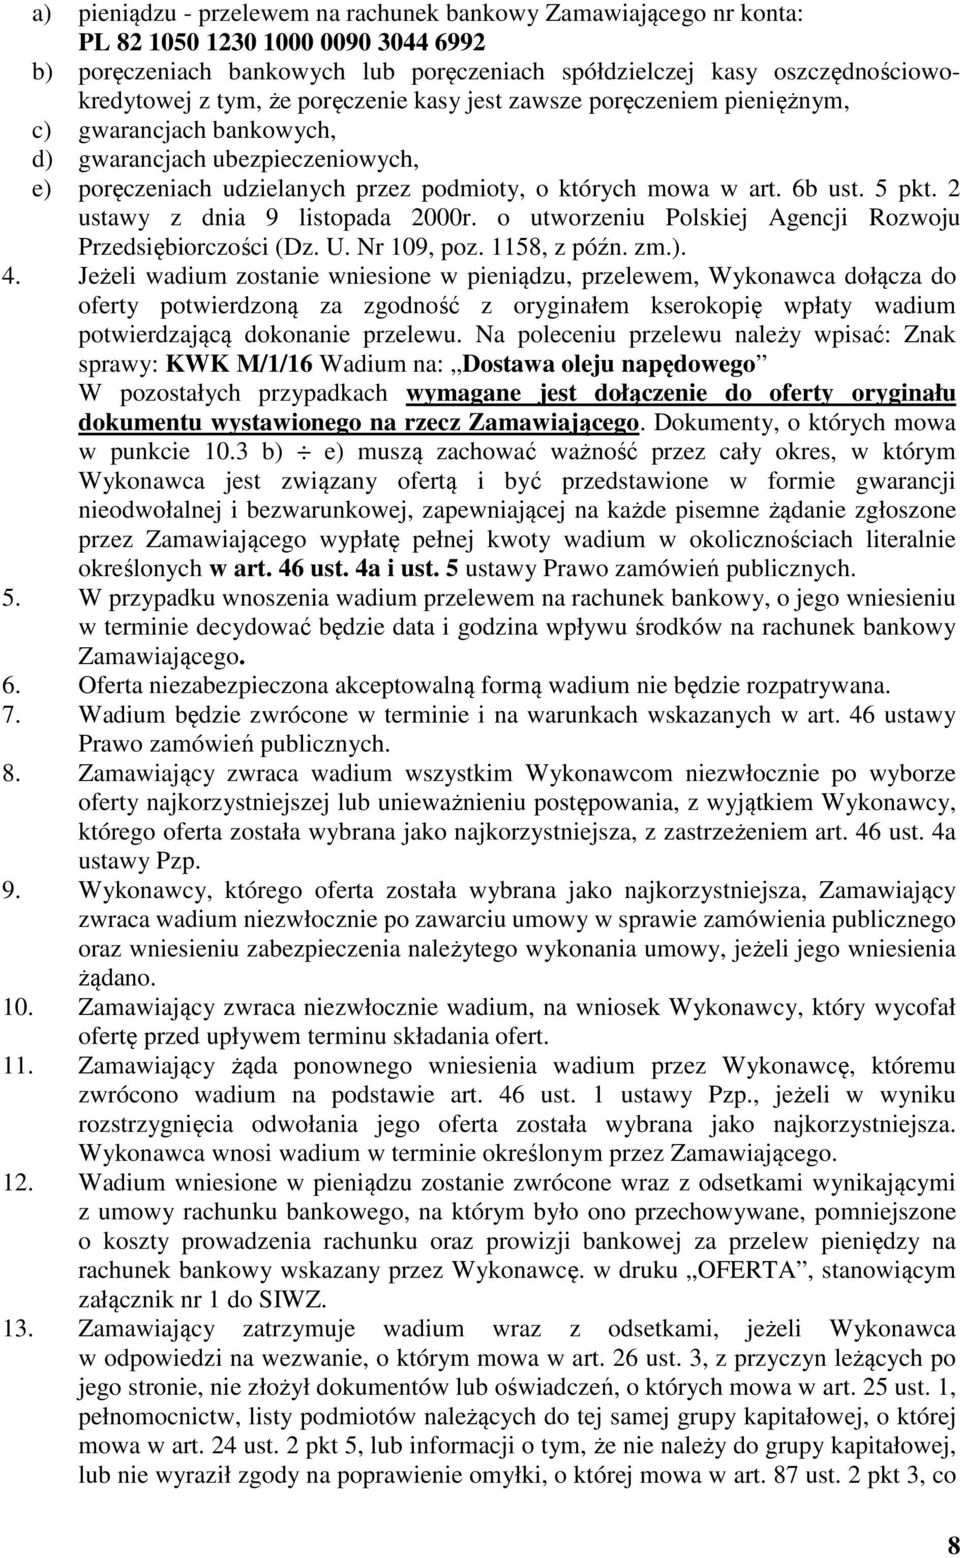 2 ustawy z dnia 9 listopada 2000r. o utworzeniu Polskiej Agencji Rozwoju Przedsiębiorczości (Dz. U. Nr 109, poz. 1158, z późn. zm.). 4.